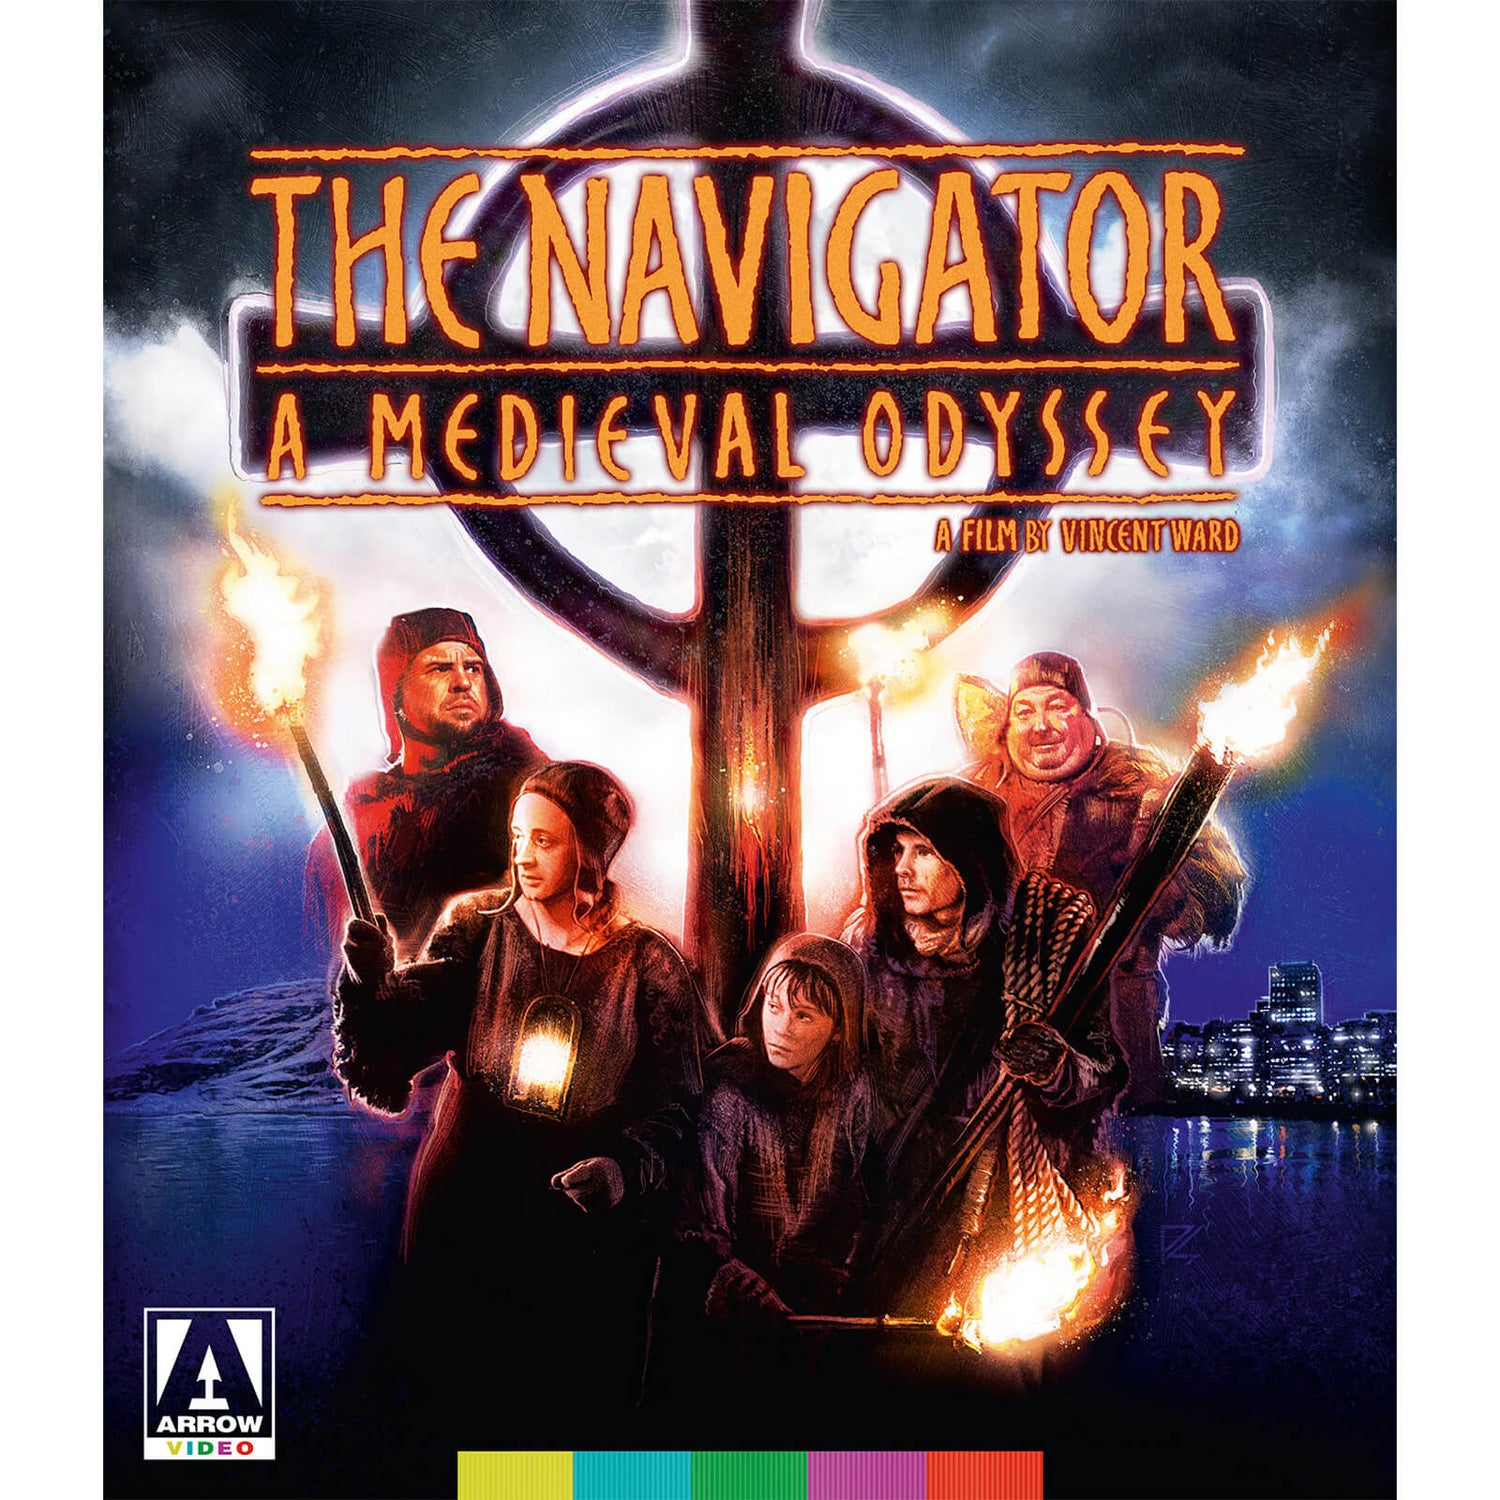 The Navigator: A Medieval Odyssey Blu-ray